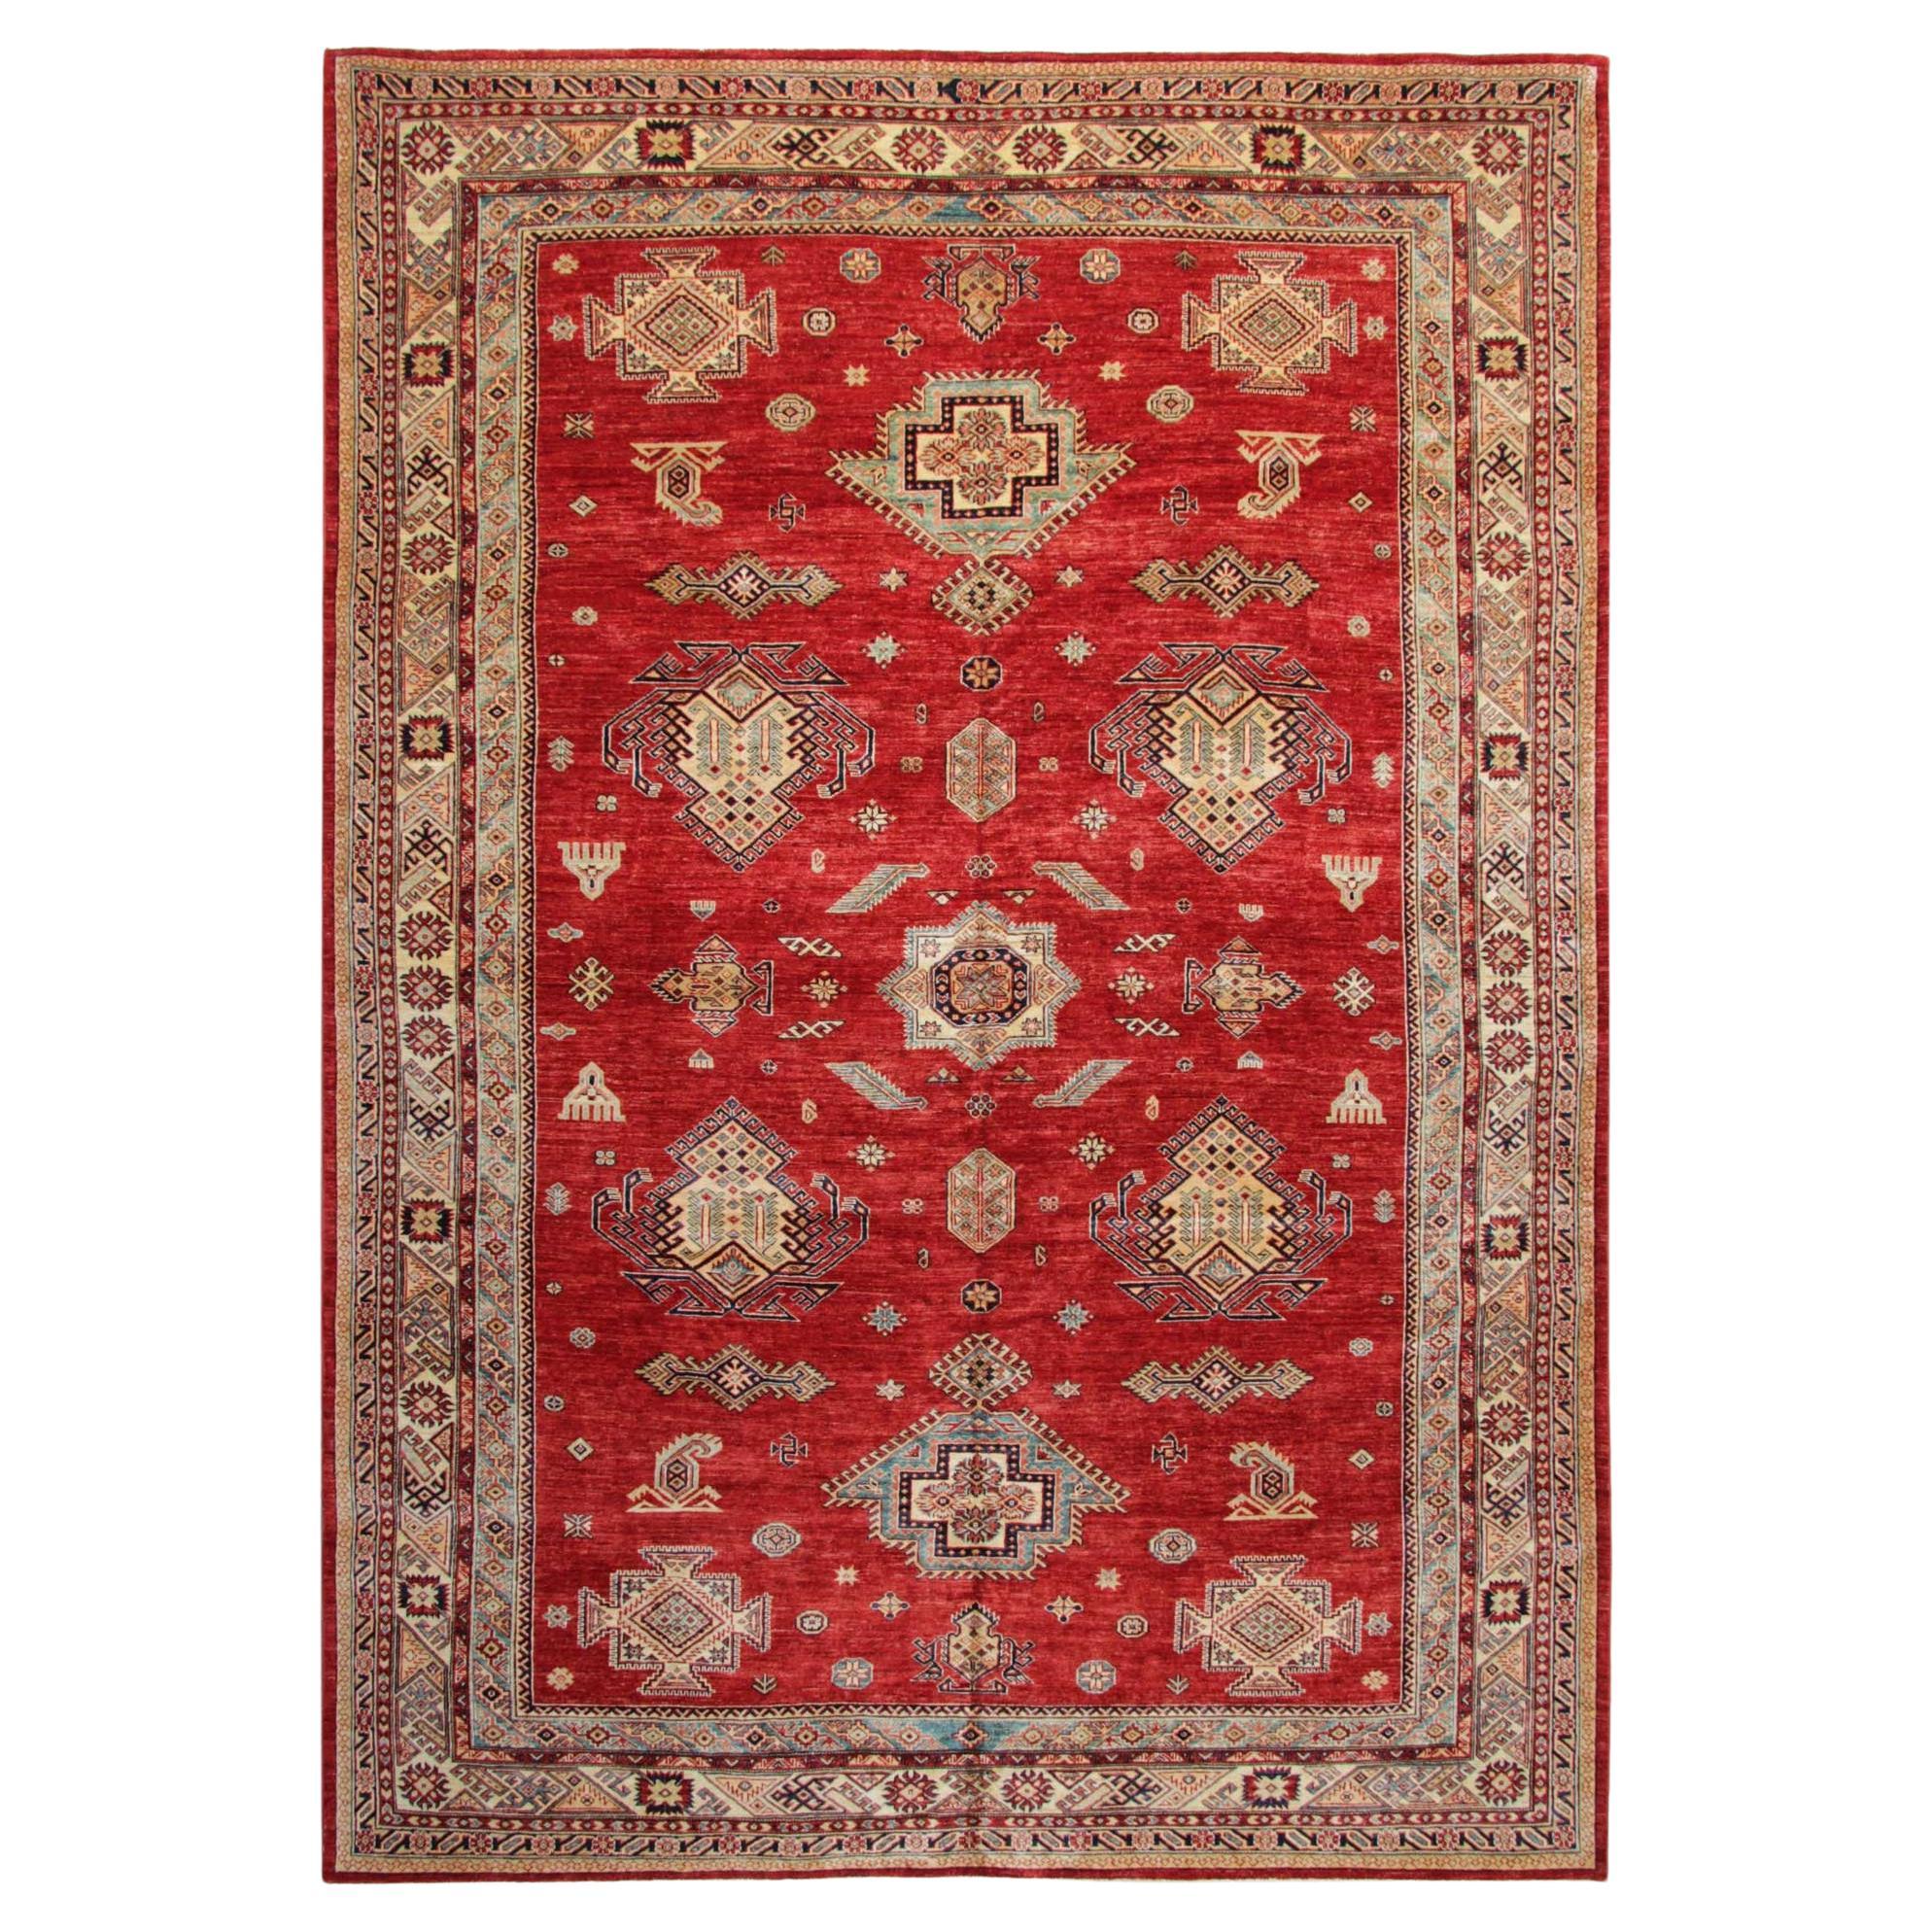 Orientalische Teppiche, große handgefertigte rote Teppiche, traditionelle Teppiche, Verkauf